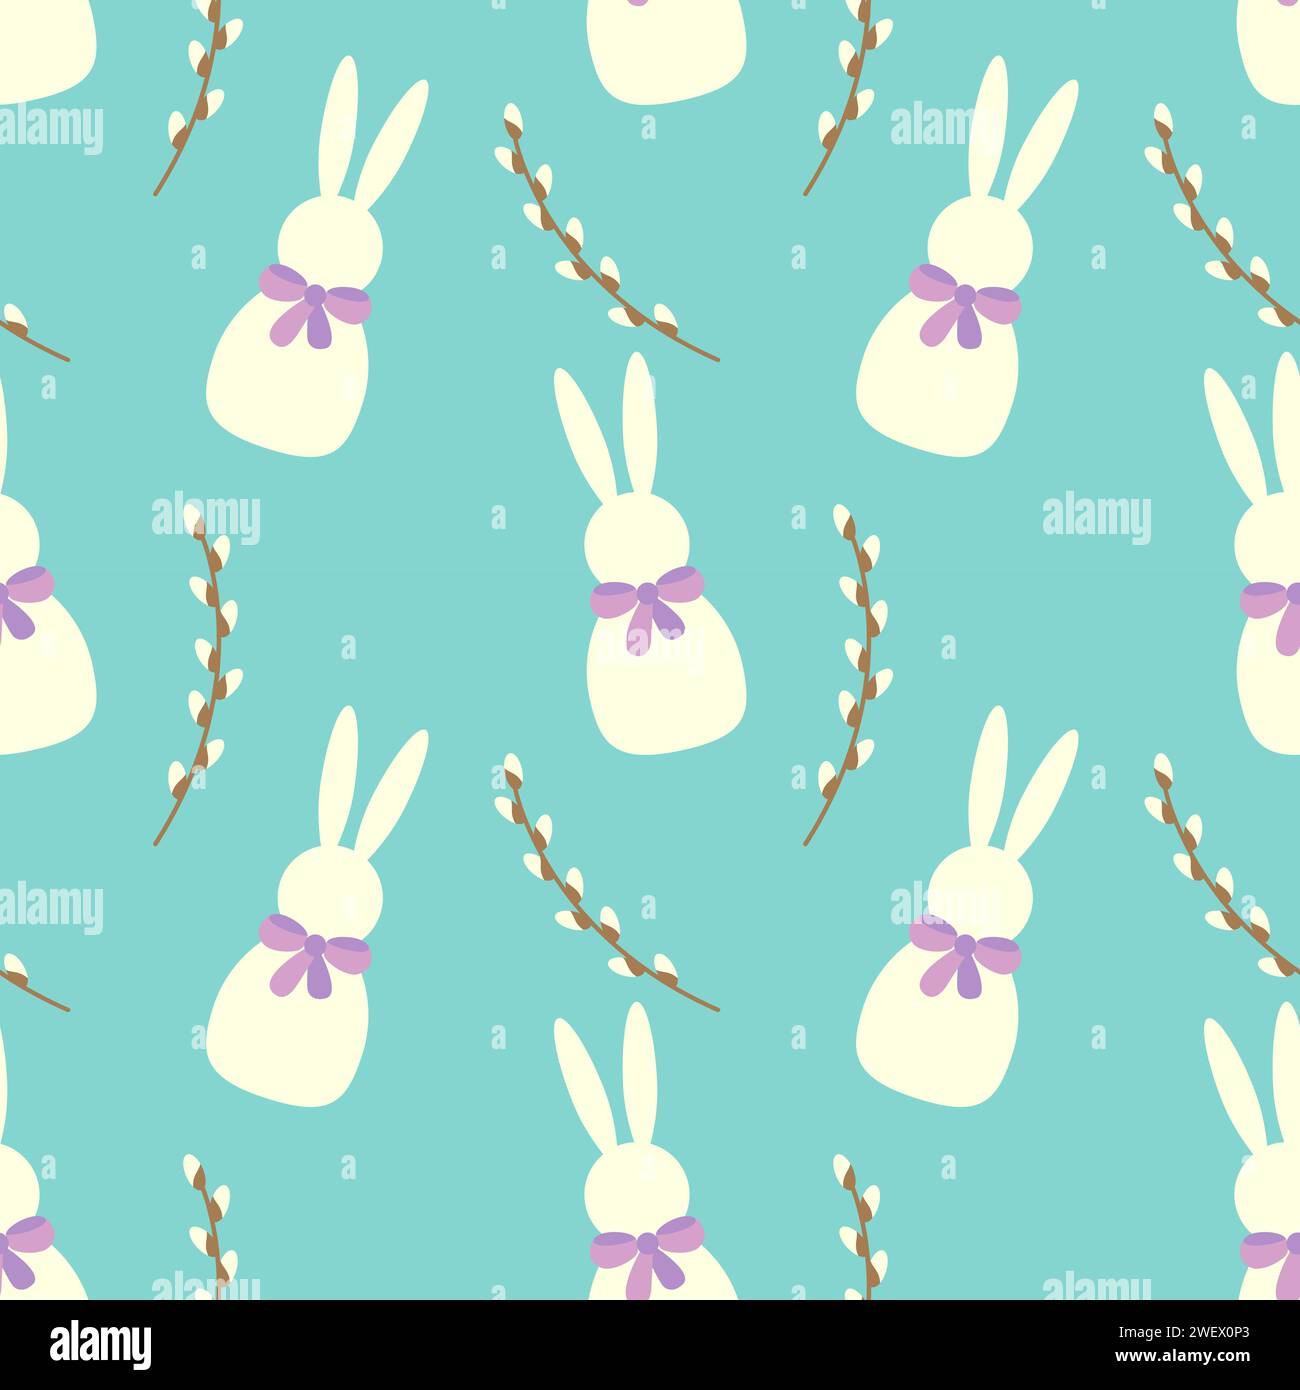 Motif répétitif mettant en vedette des lapins blancs stylisés avec des noeuds violets et des branches de saule marron sur un fond bleu vibrant, généralement utilisé pour Illustration de Vecteur